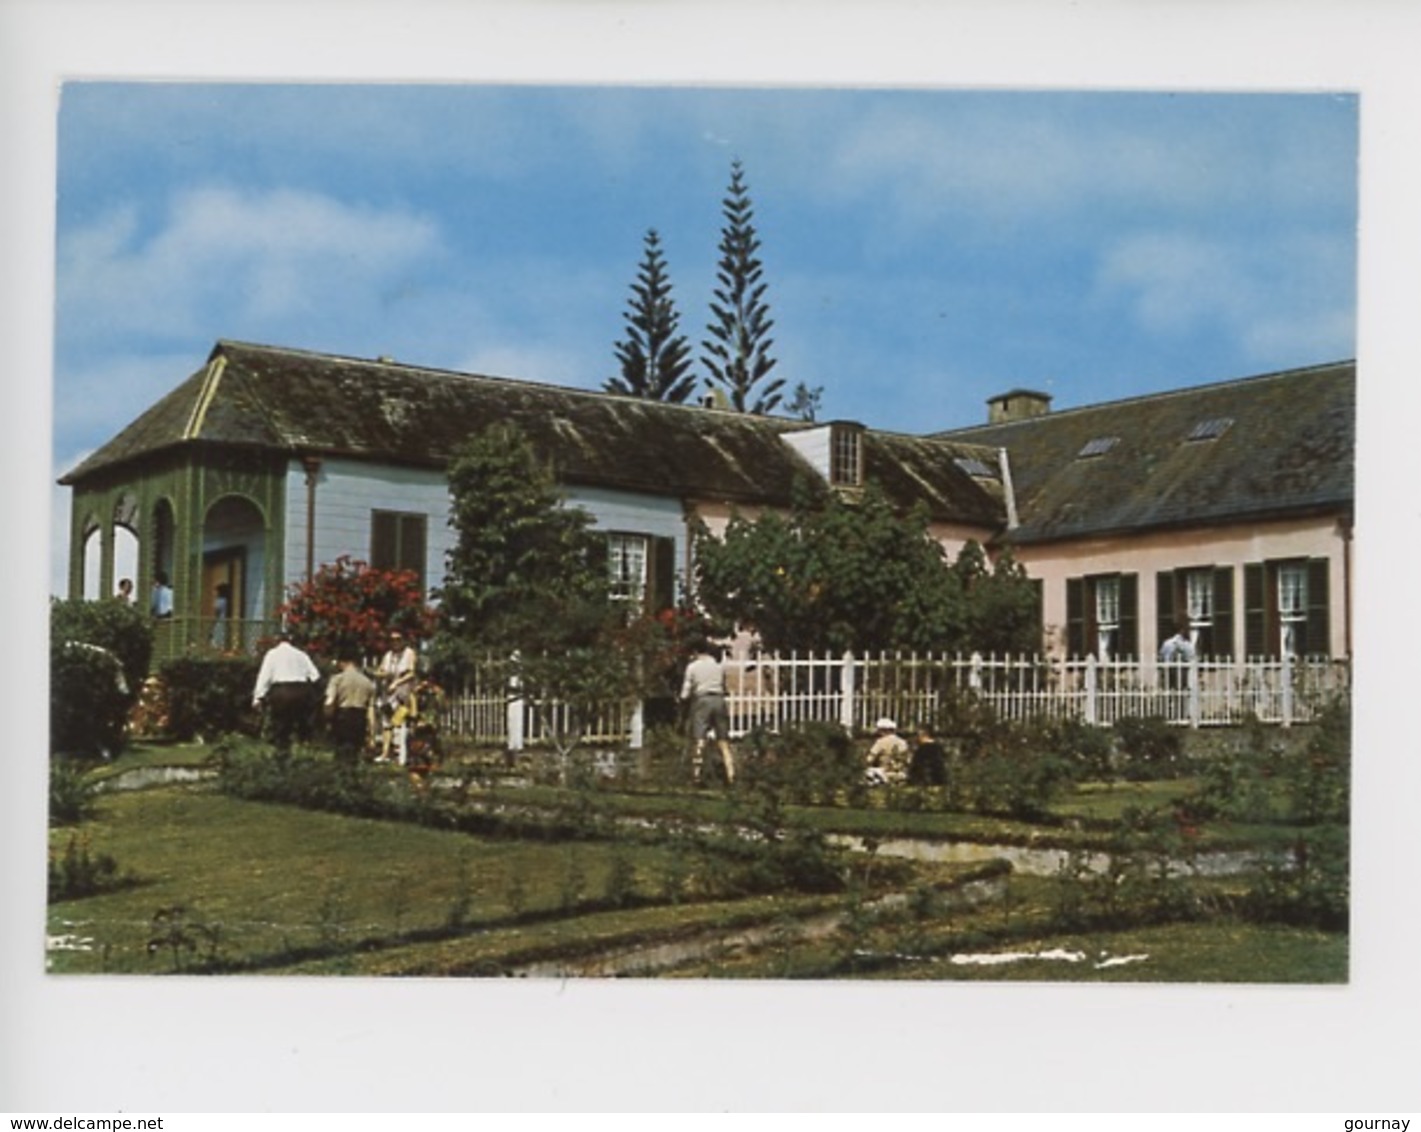 Bicentenaire Napoléon 1er 1769-1969 Croisière Impériale Sainte Hélène, Longwood Maison Et Jardin De L'Empereur En Exil - Saint Helena Island